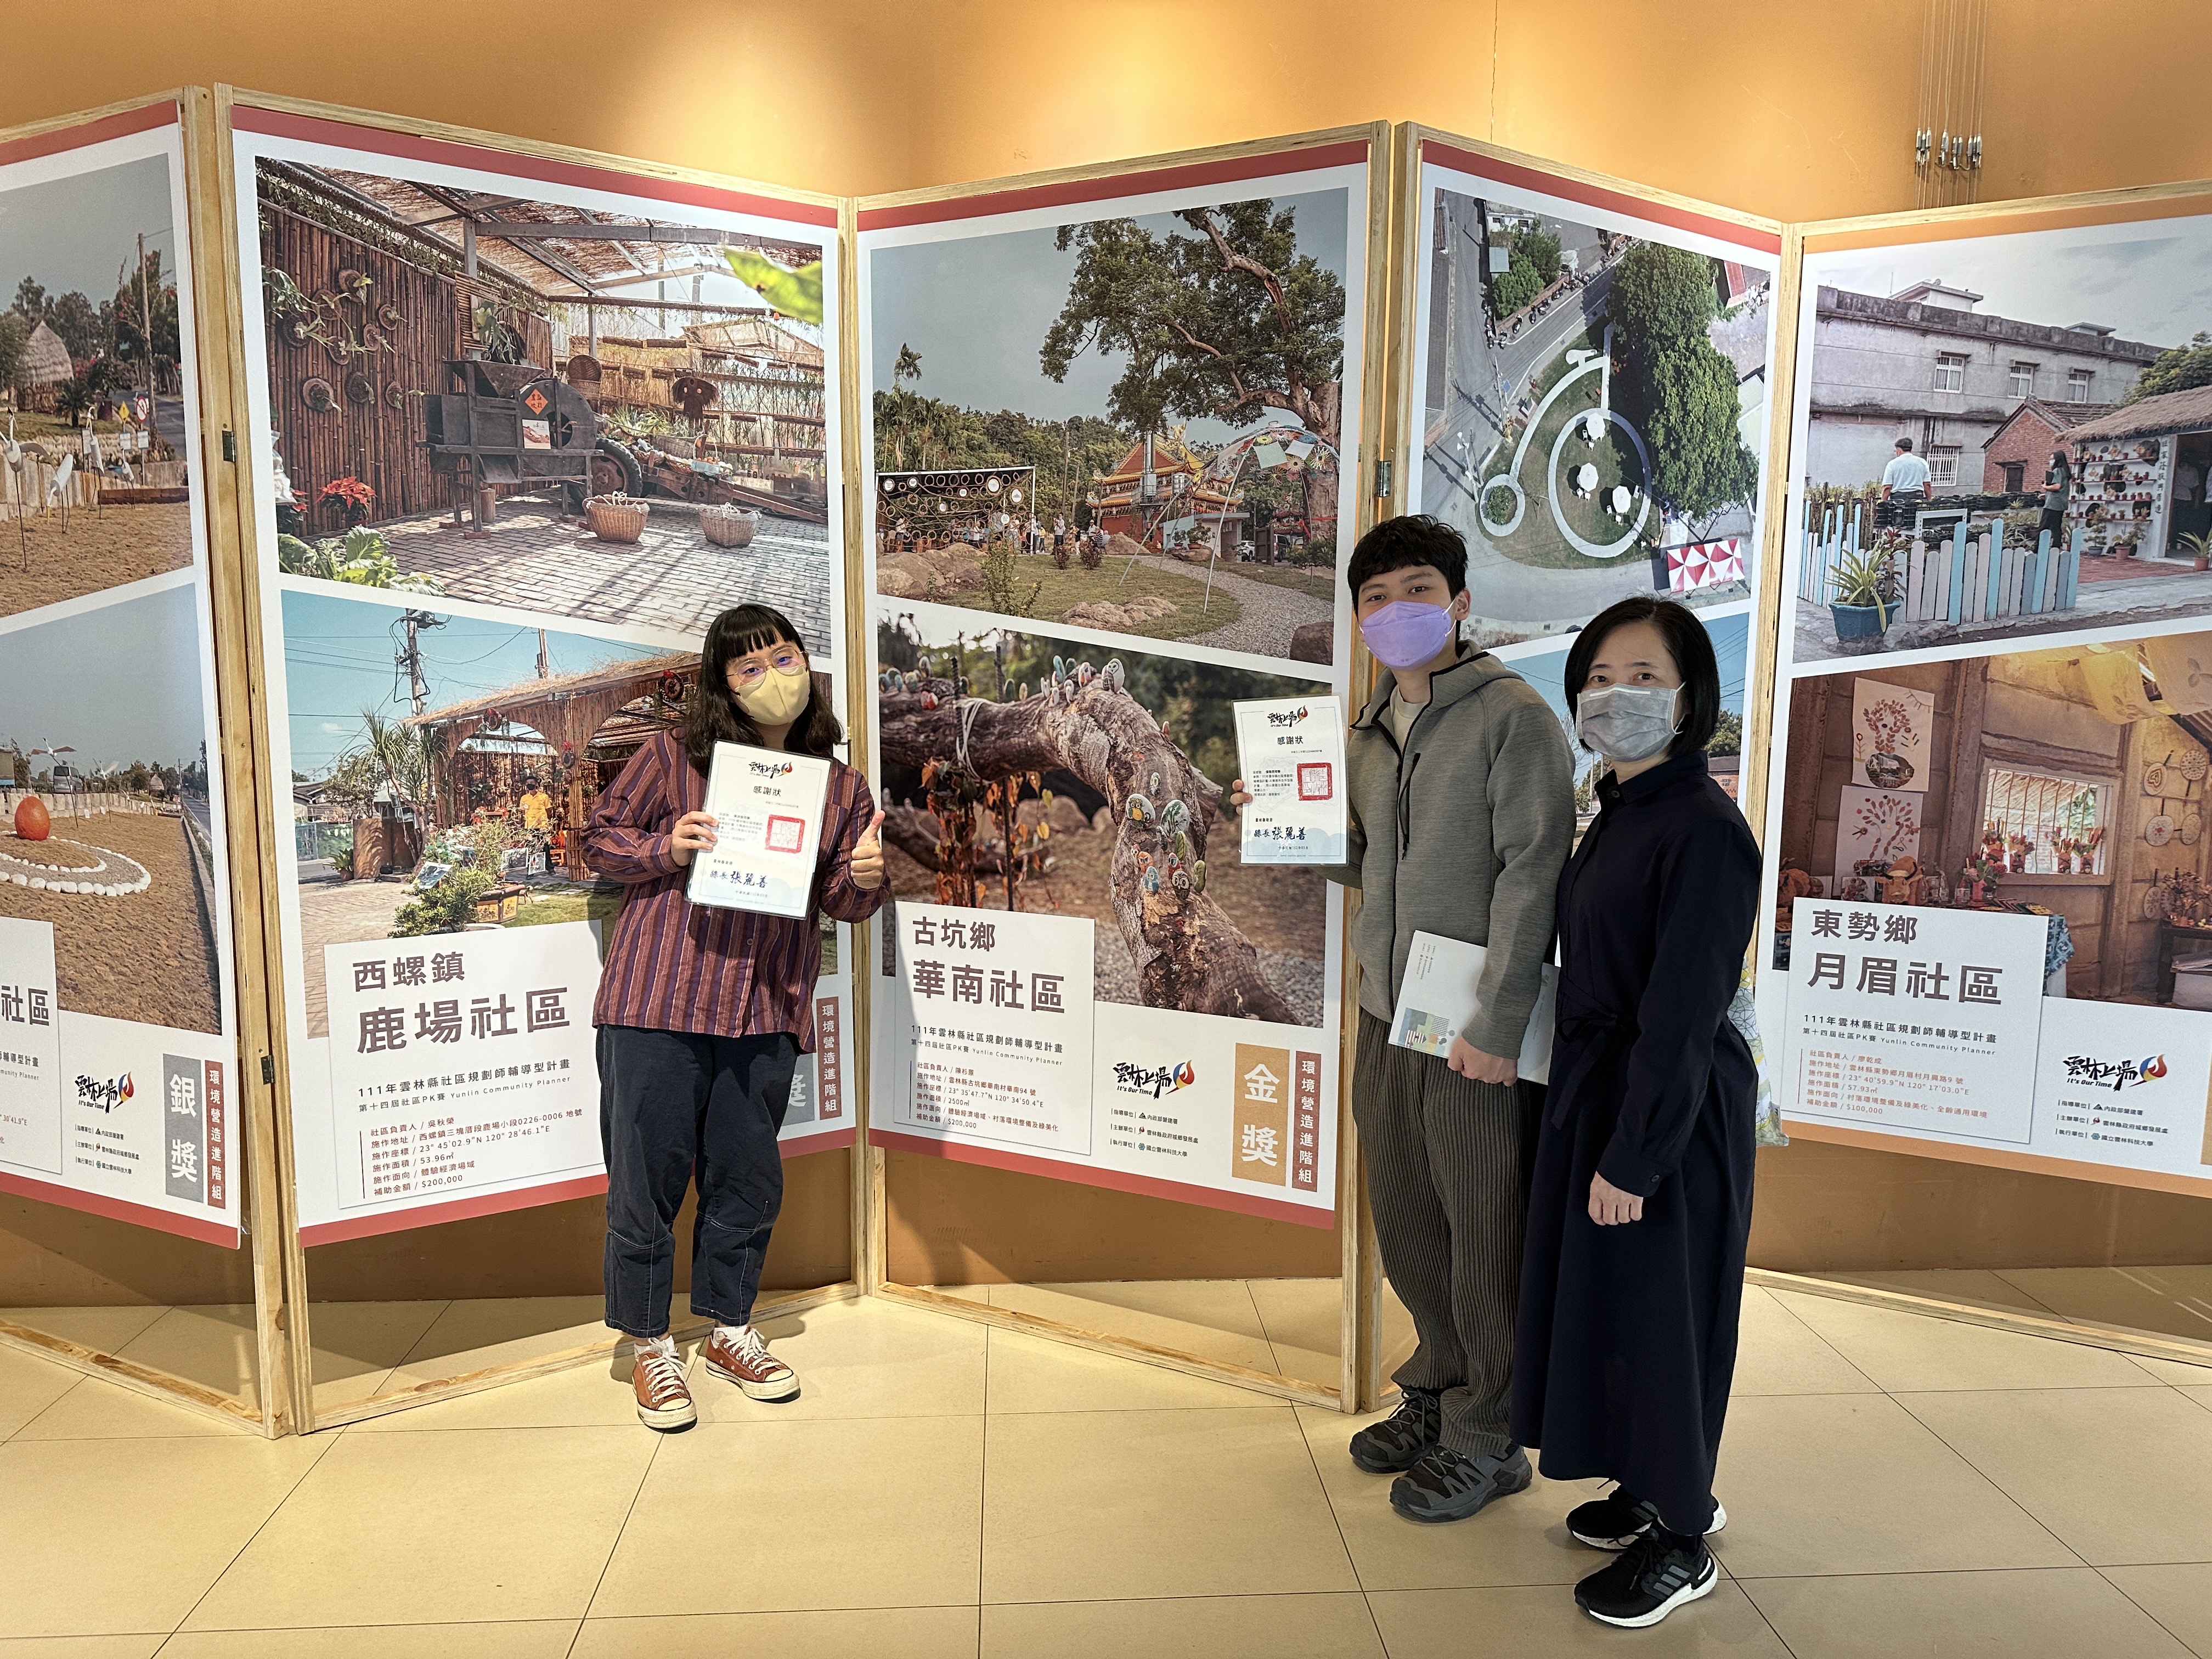 圖為(由右而左)亞大室設系林佳慧老師、張弼然、蕭佳誼同學，在「雲林縣社區PK賽」頒獎典禮現場合影。